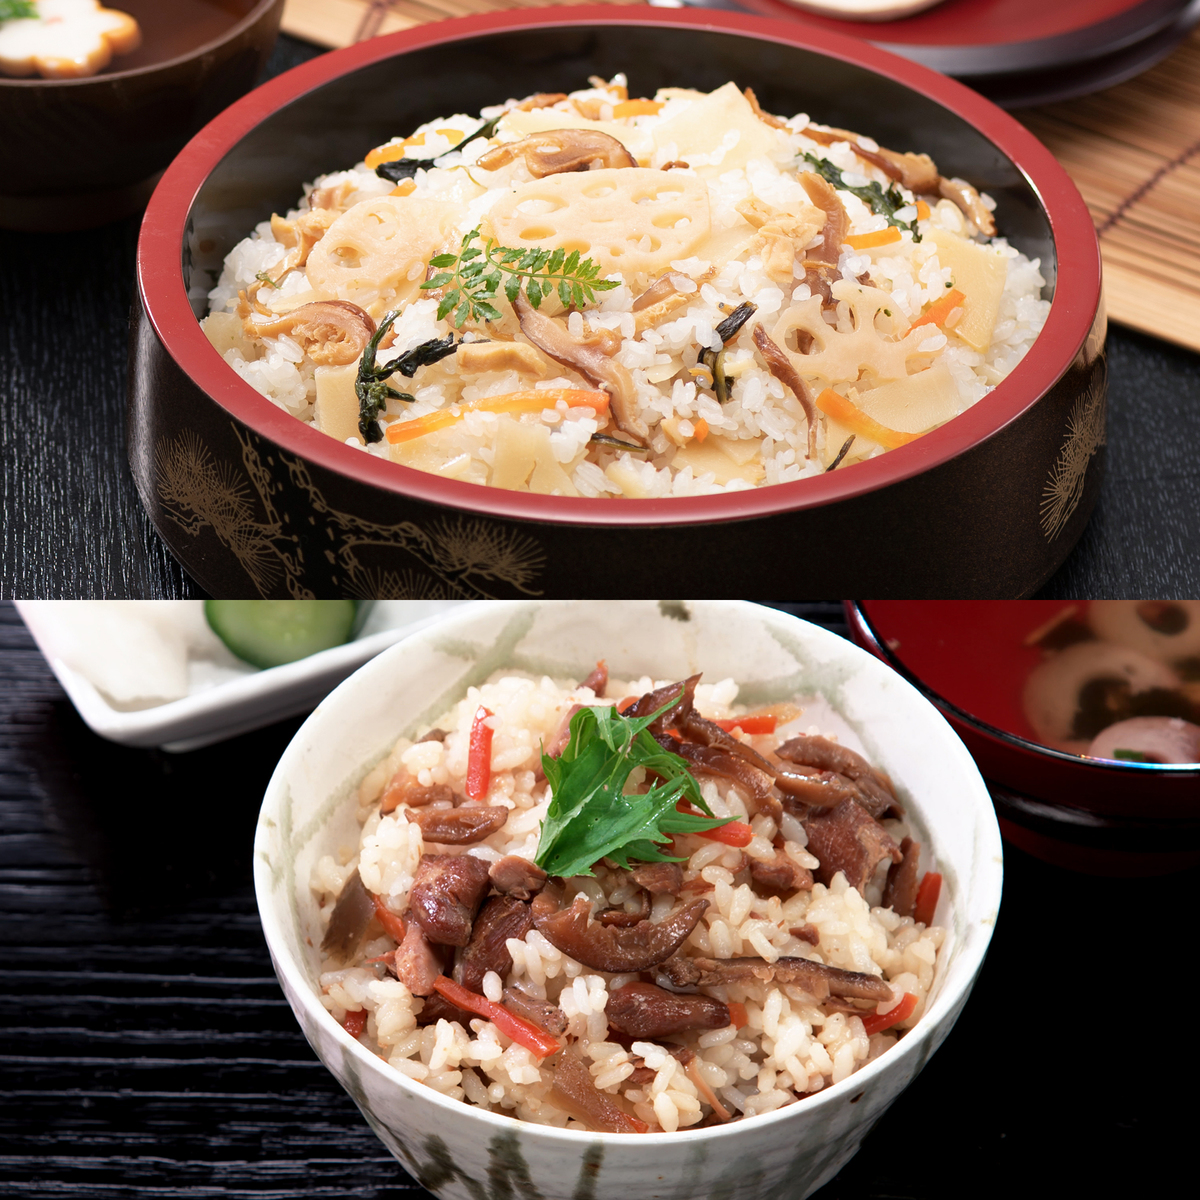  京風ミニちらし&鶏ごぼう混ぜご飯の素計10袋